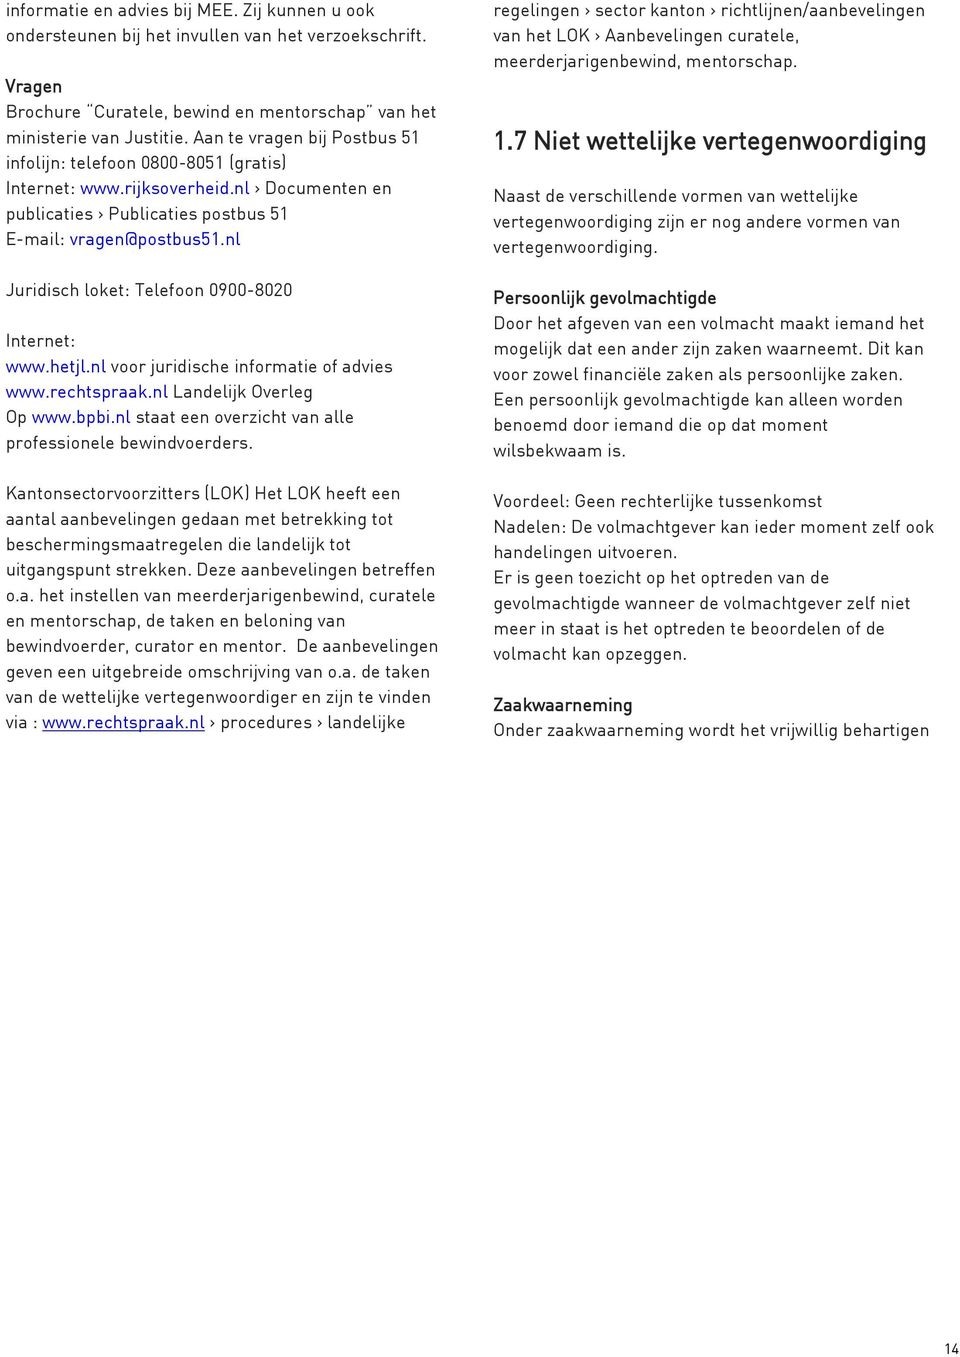 nl Juridisch loket: Telefoon 0900-8020 Internet: www.hetjl.nl voor juridische informatie of advies www.rechtspraak.nl Landelijk Overleg Op www.bpbi.